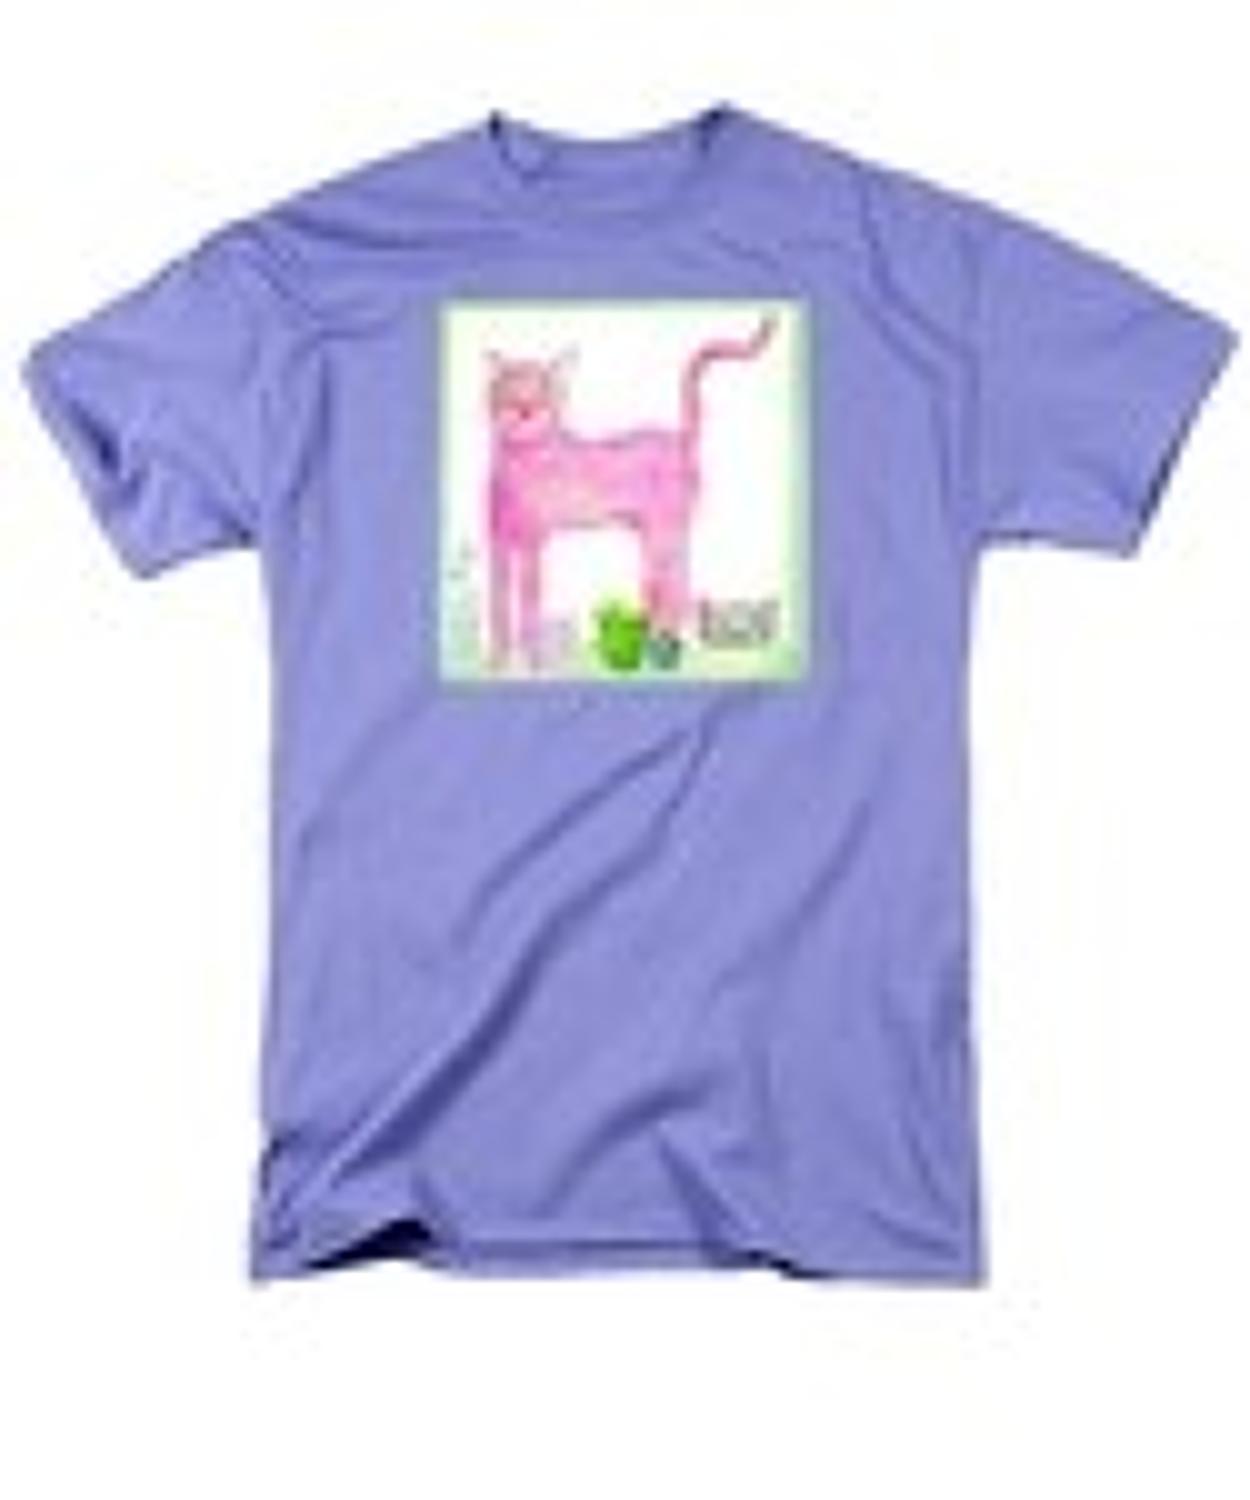 P ink ee cat t-shirt